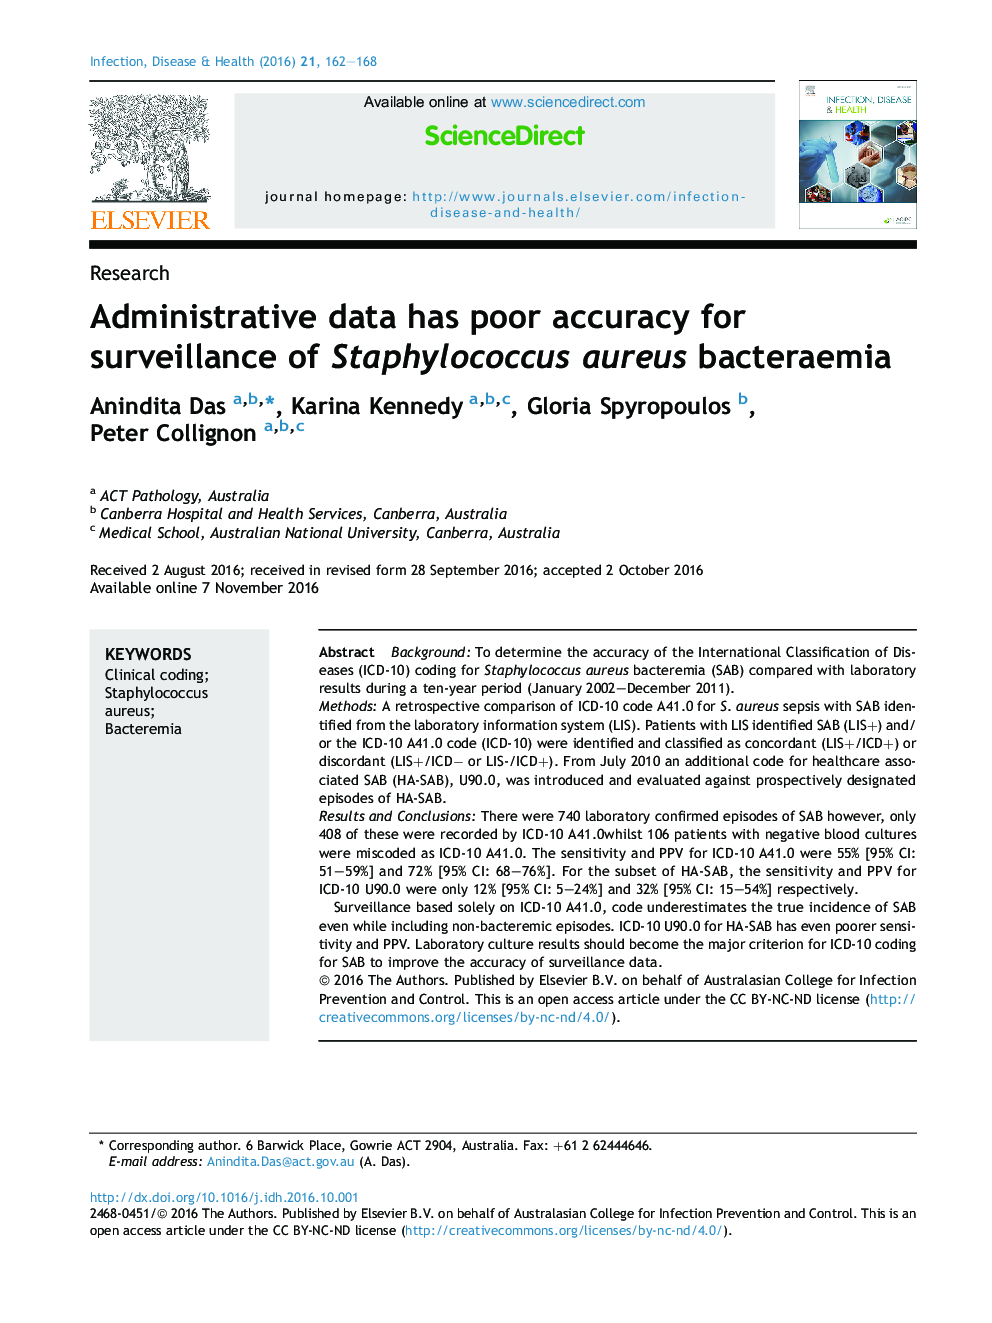 داده های اداری دقت ضعیفی برای نظارت بر باکتری های استافیلوکوک اورئوس دارند 